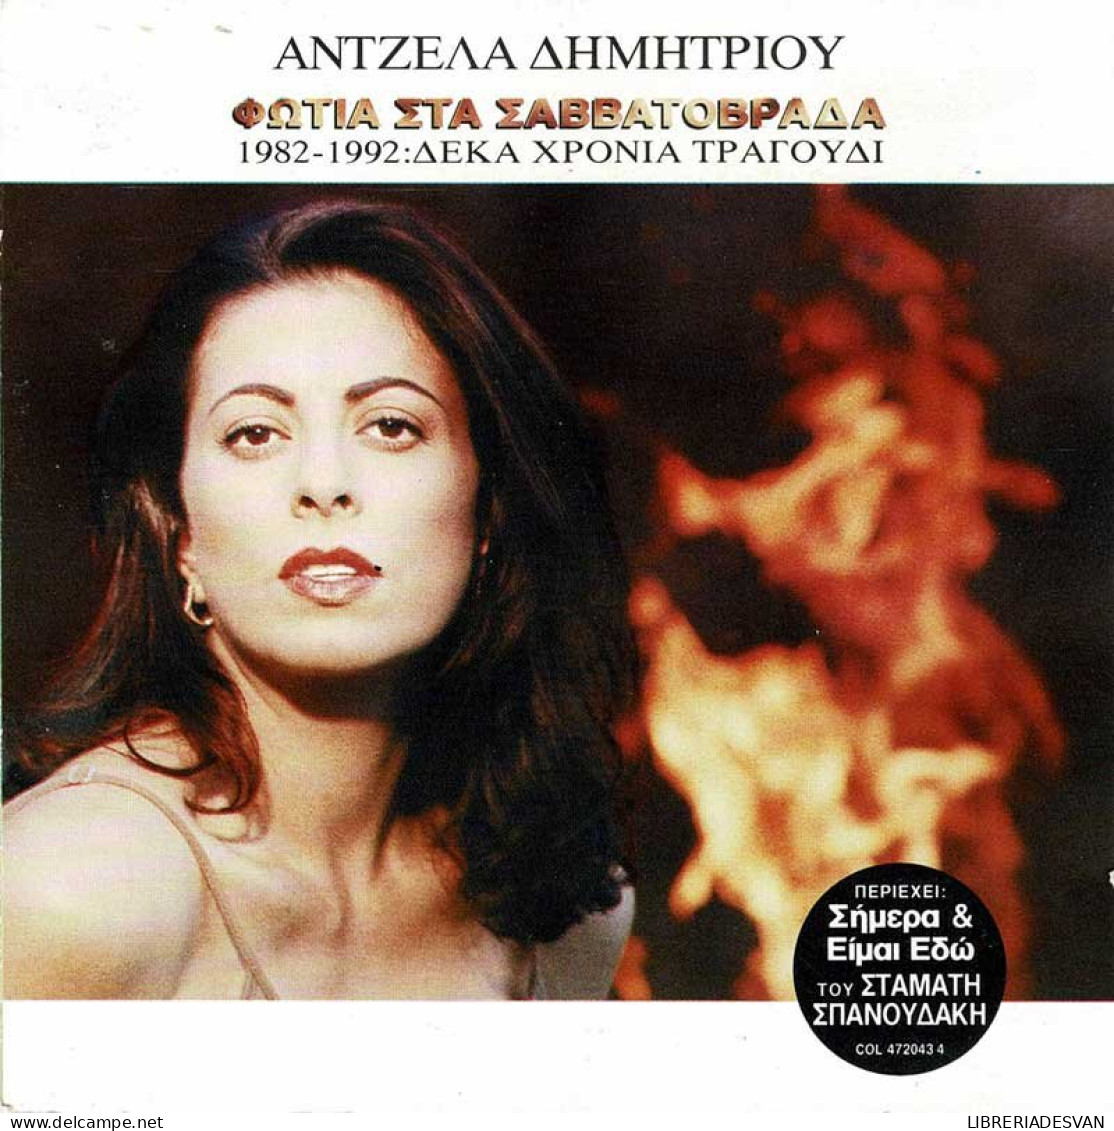 Angela Dimitriou - Fotia Sta Savatovrada. CD - Country & Folk